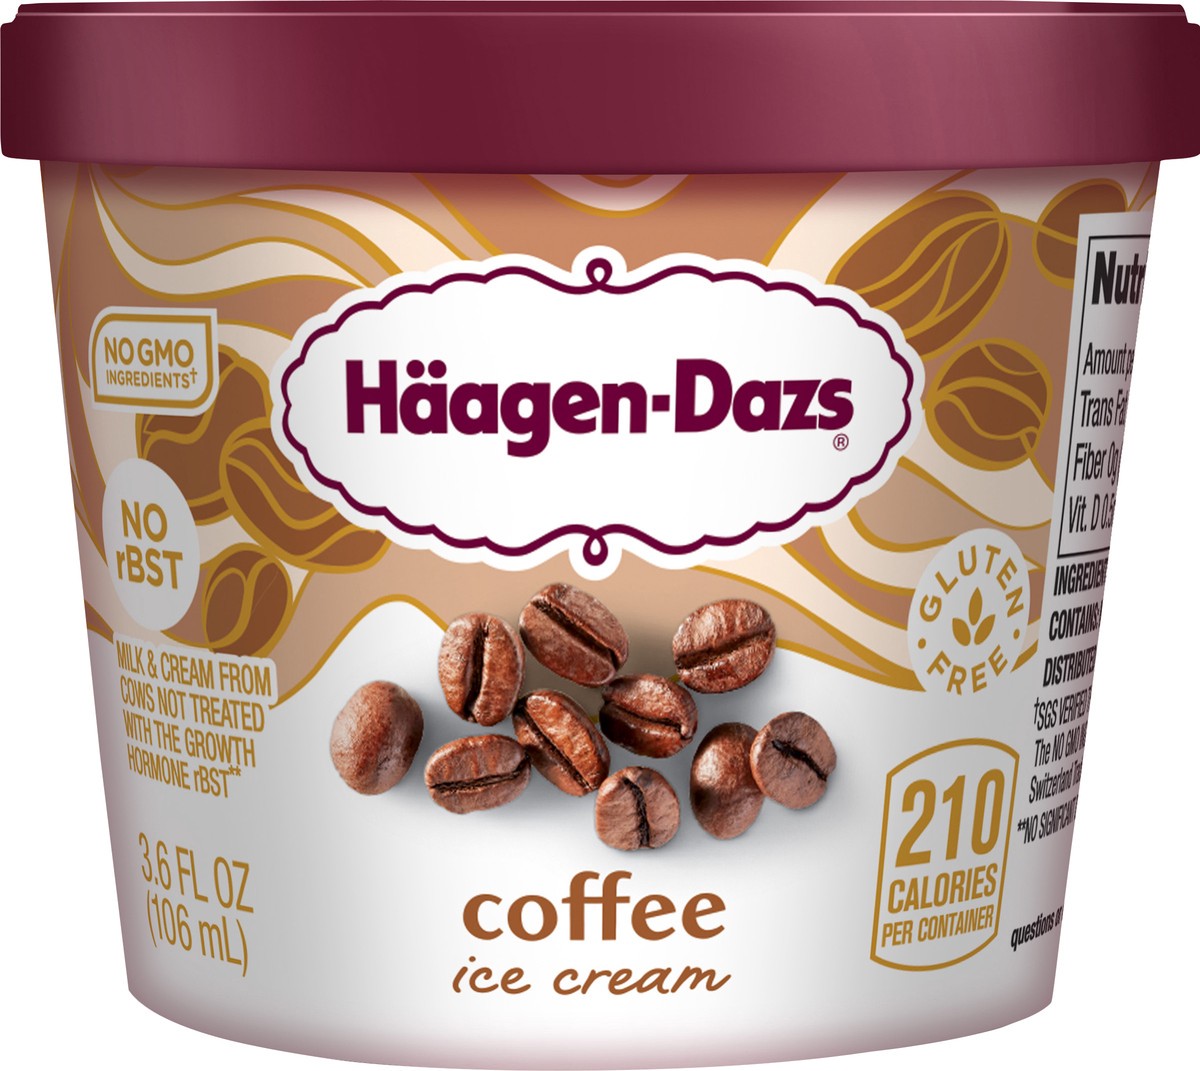 slide 5 of 7, Häagen-Dazs Ice Cream, 3.6 fl oz